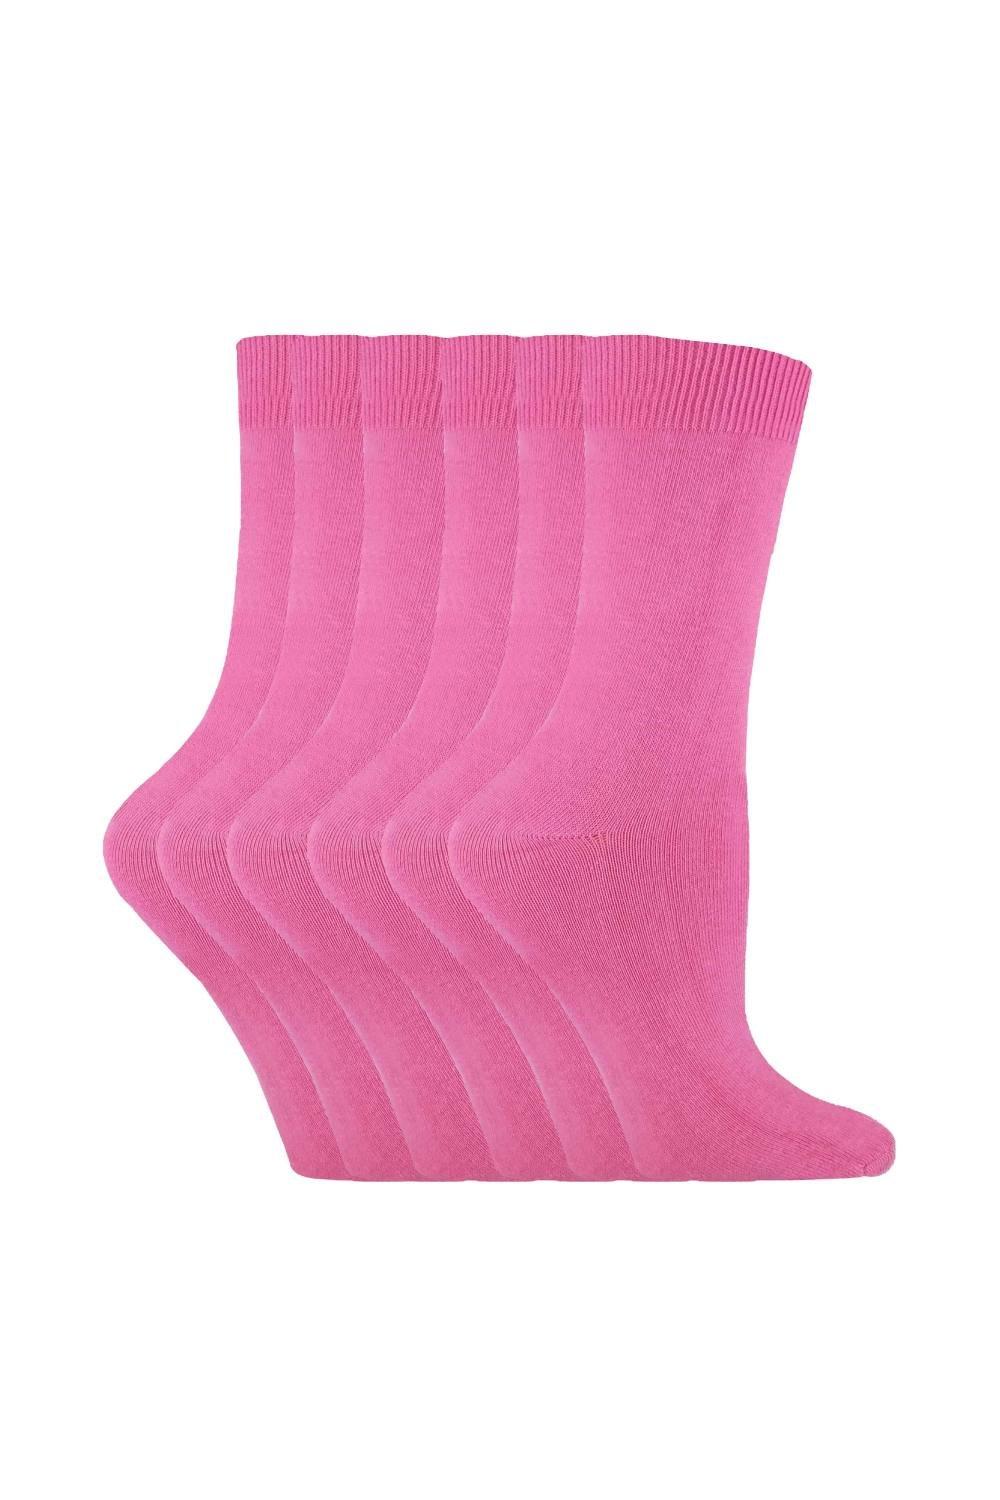 6 Pairs Plain Coloured Cotton Rich Ankle Socks